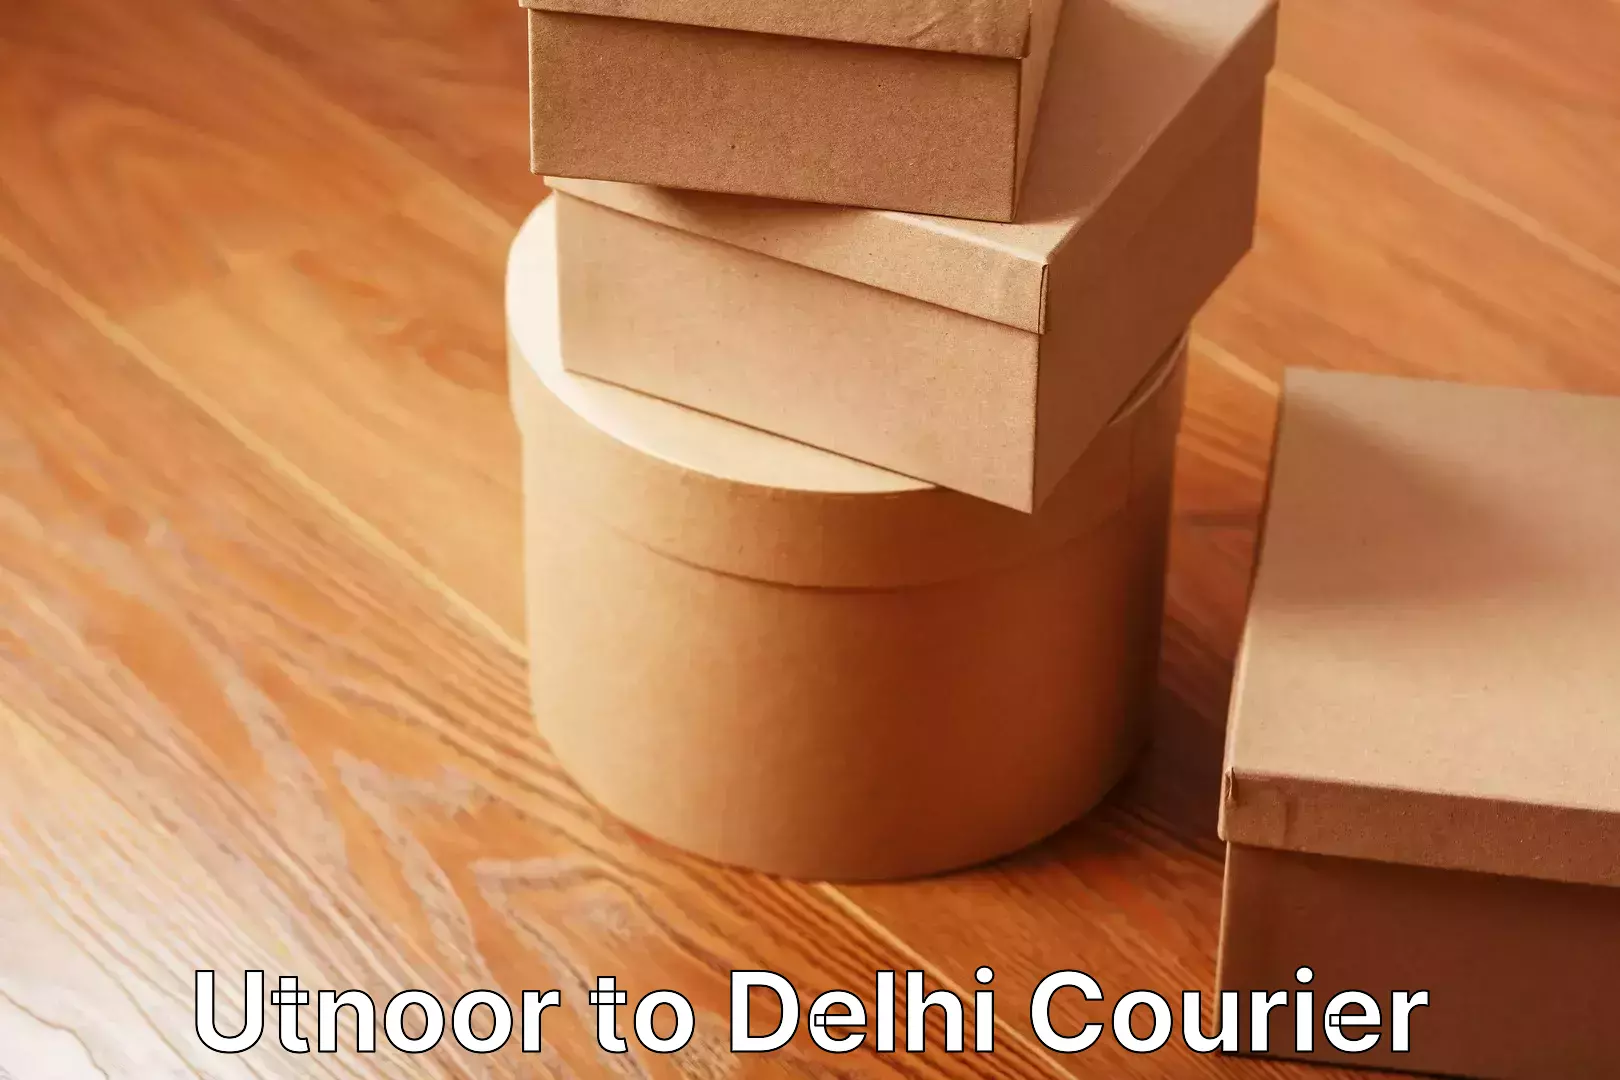 Professional movers Utnoor to Delhi